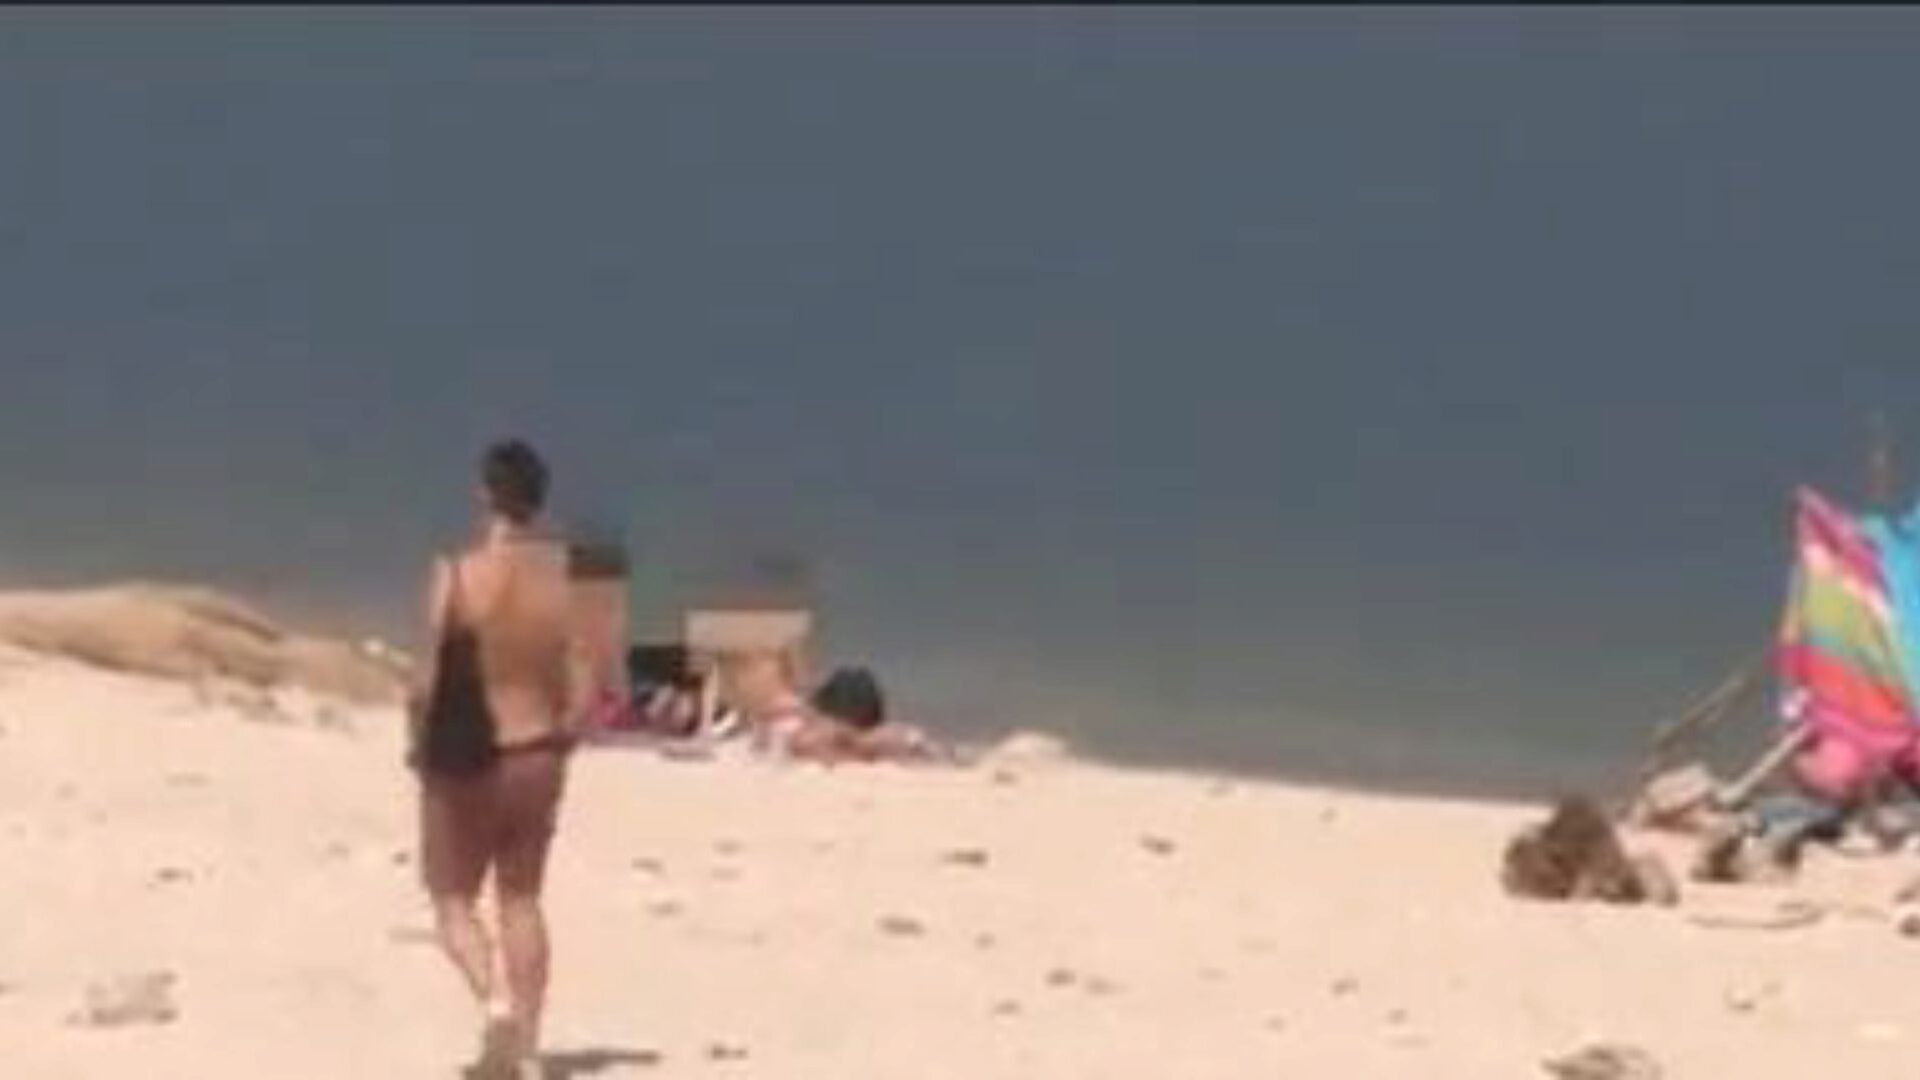 un extraño se enamora de la gran baqueta de jotade en la playa naturista jotade nos demuestra cómo ese tipo puede levantar a cualquier ángel y lo hace simplemente saliendo desnudo en el bosque